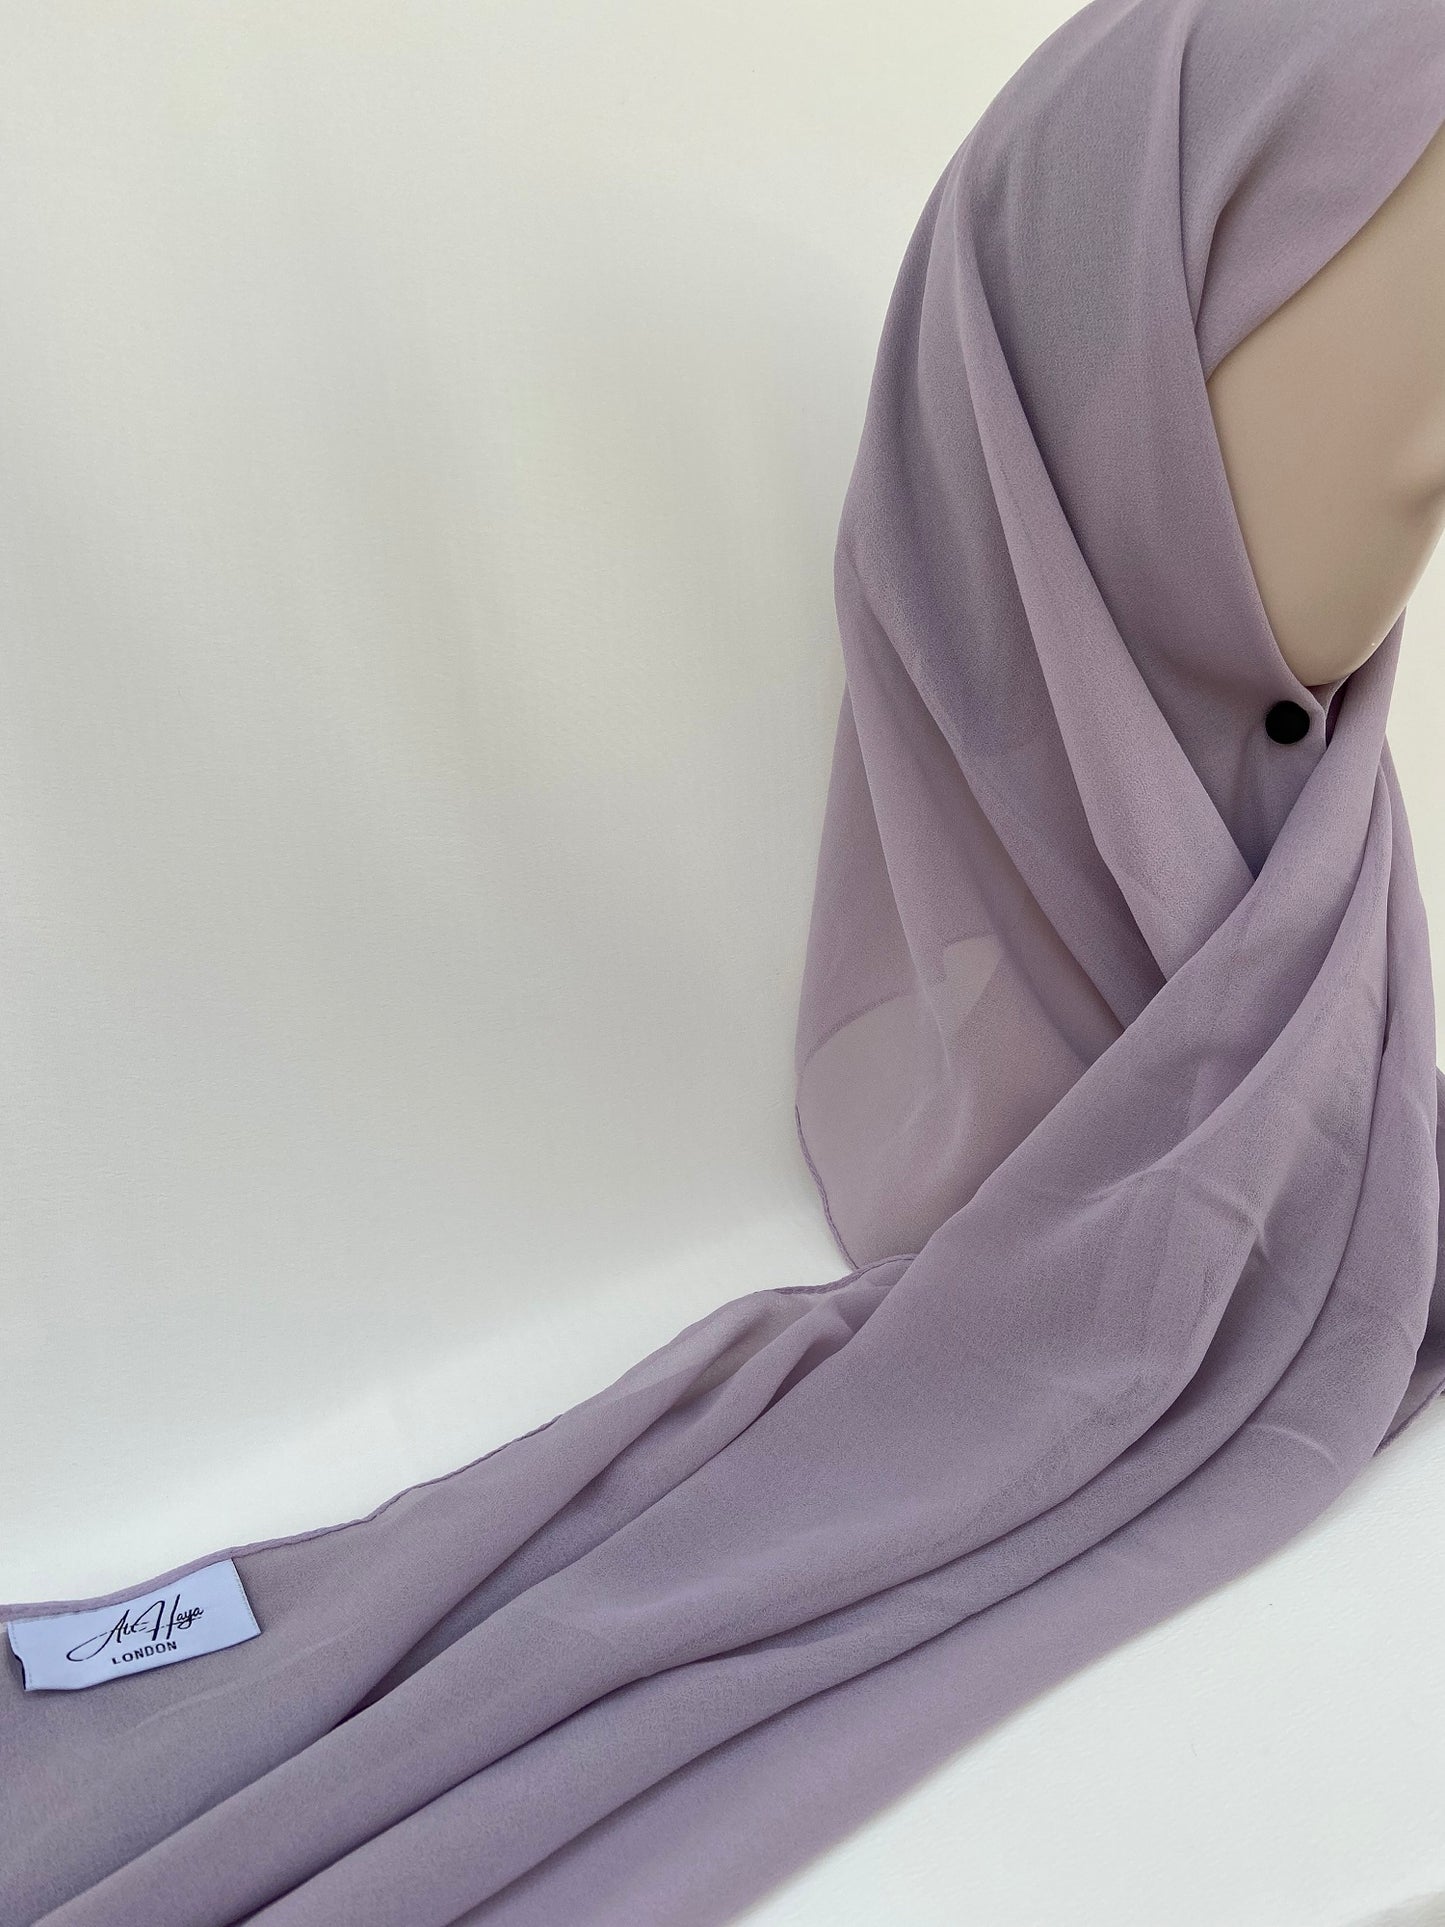 Lavender Premium Chiffon Hijab